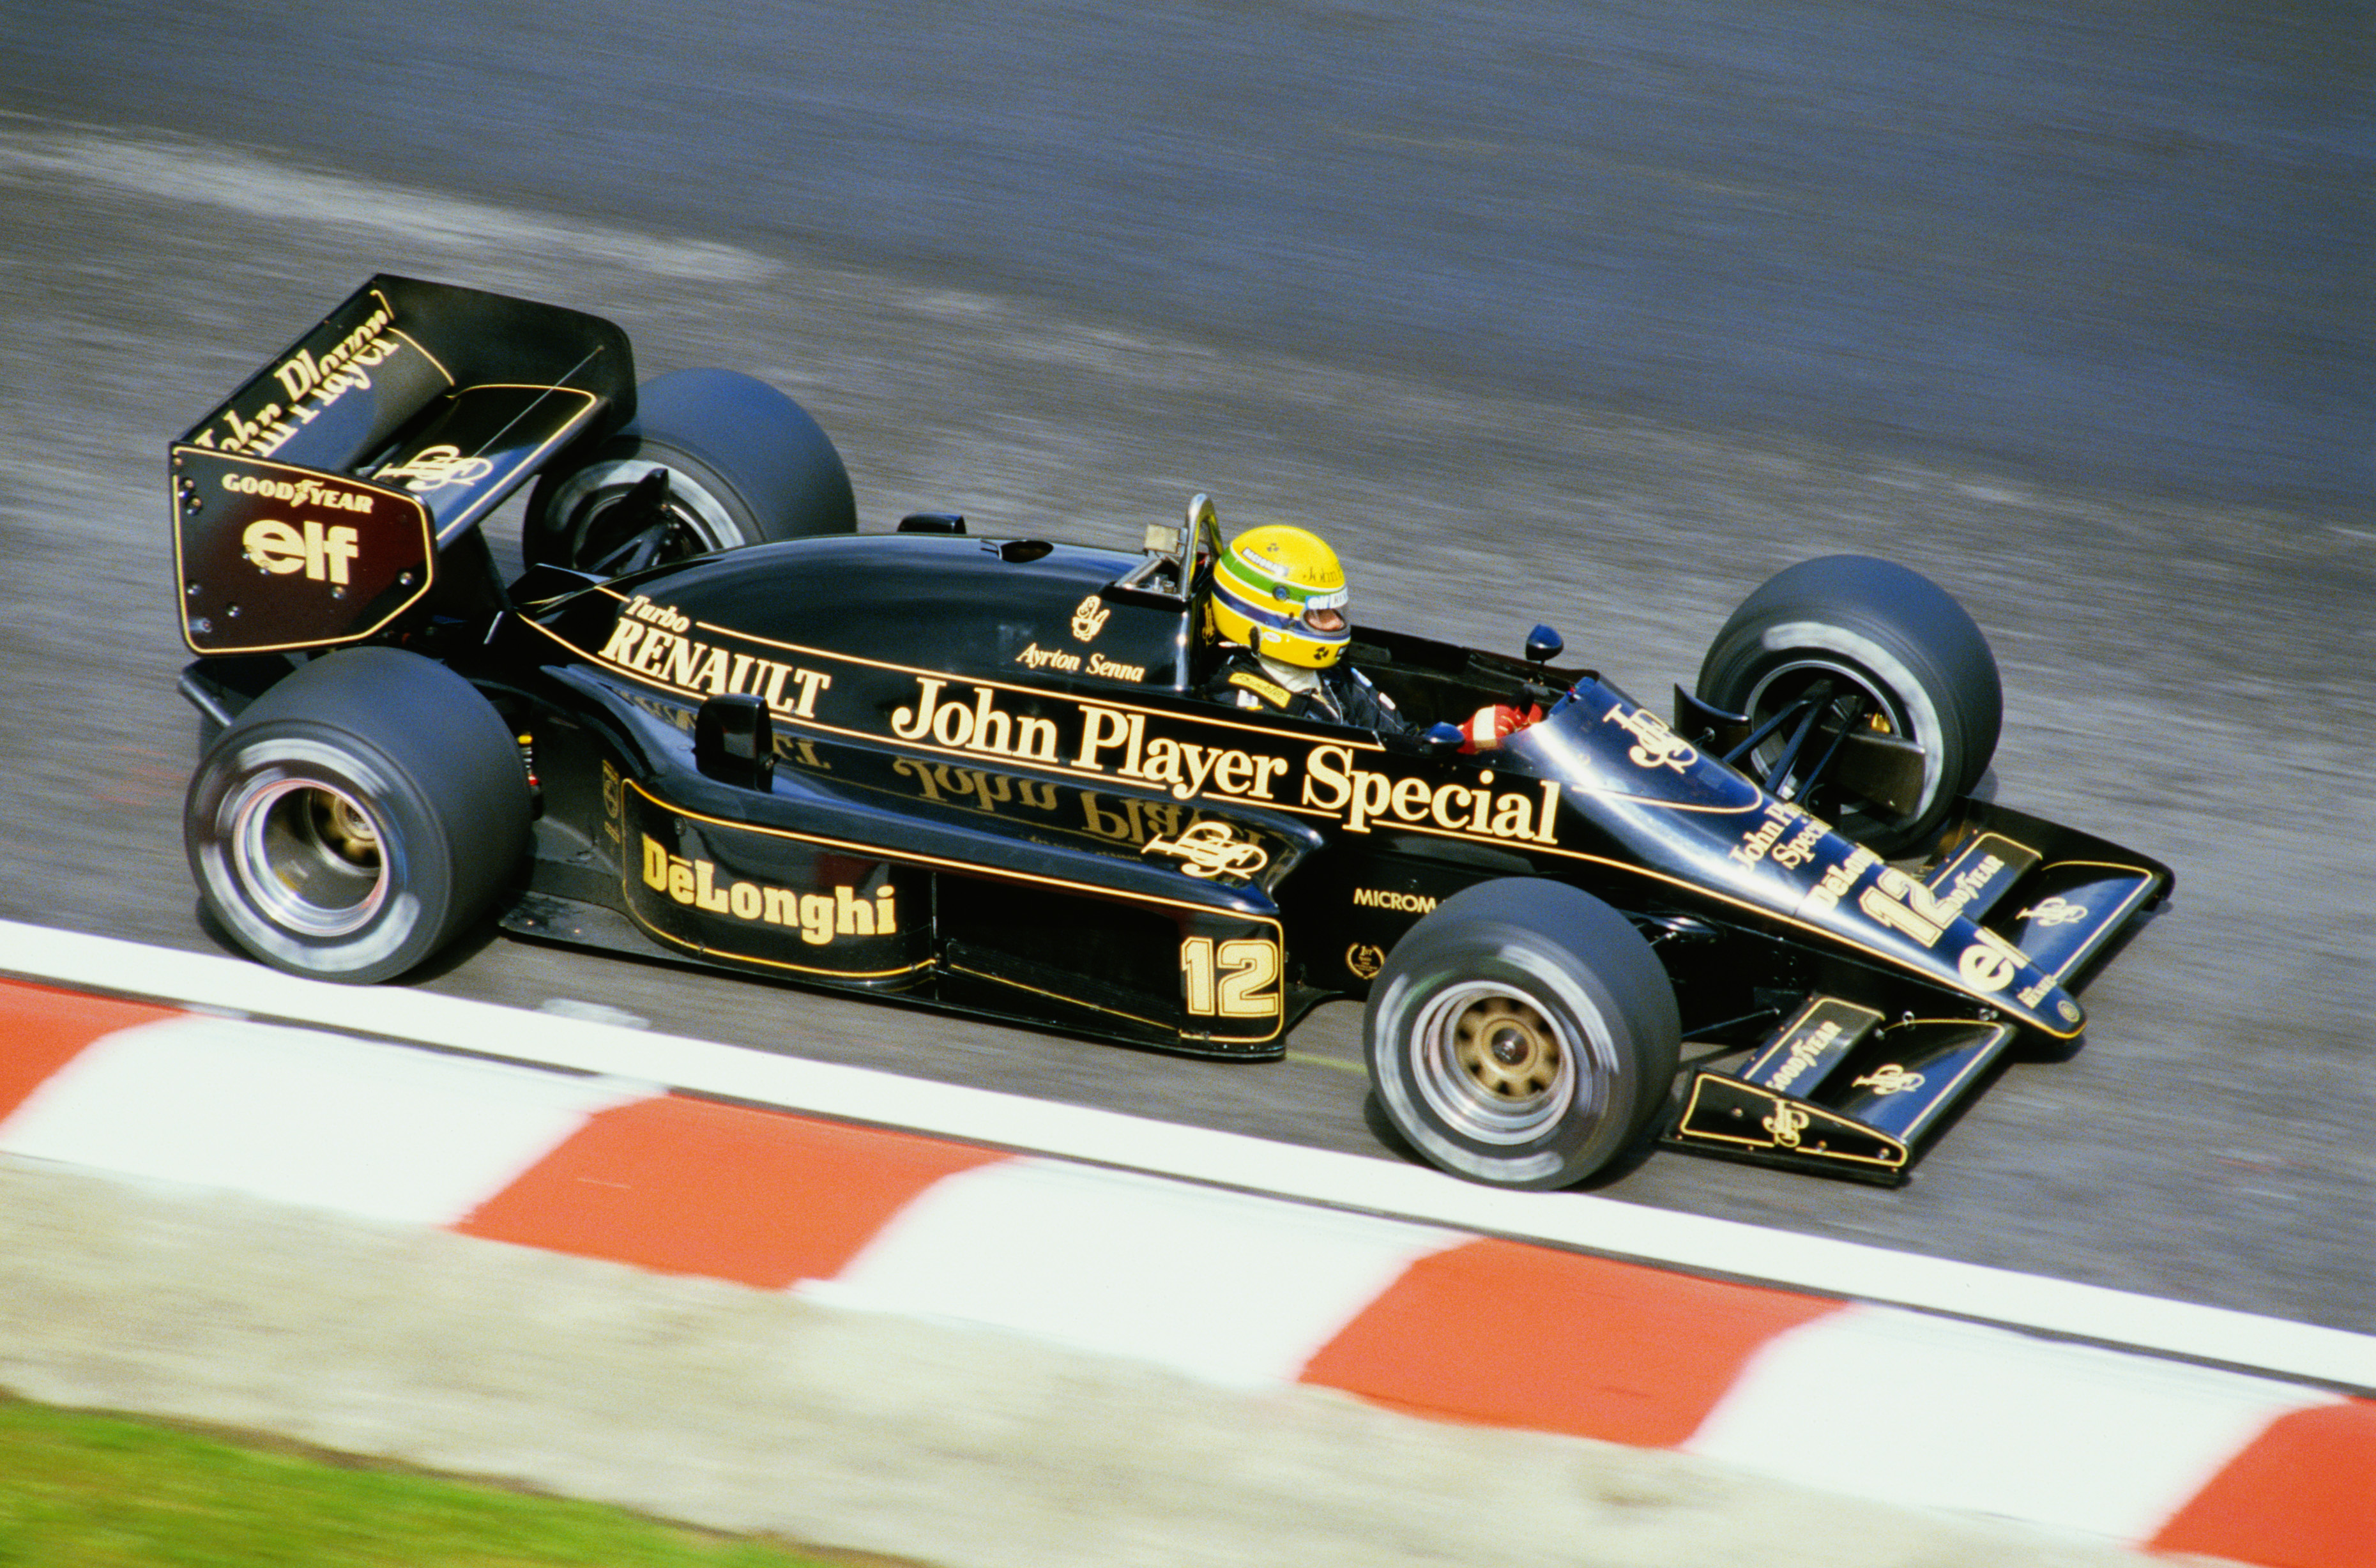 Nouvelles de la F1 : Lotus 98T